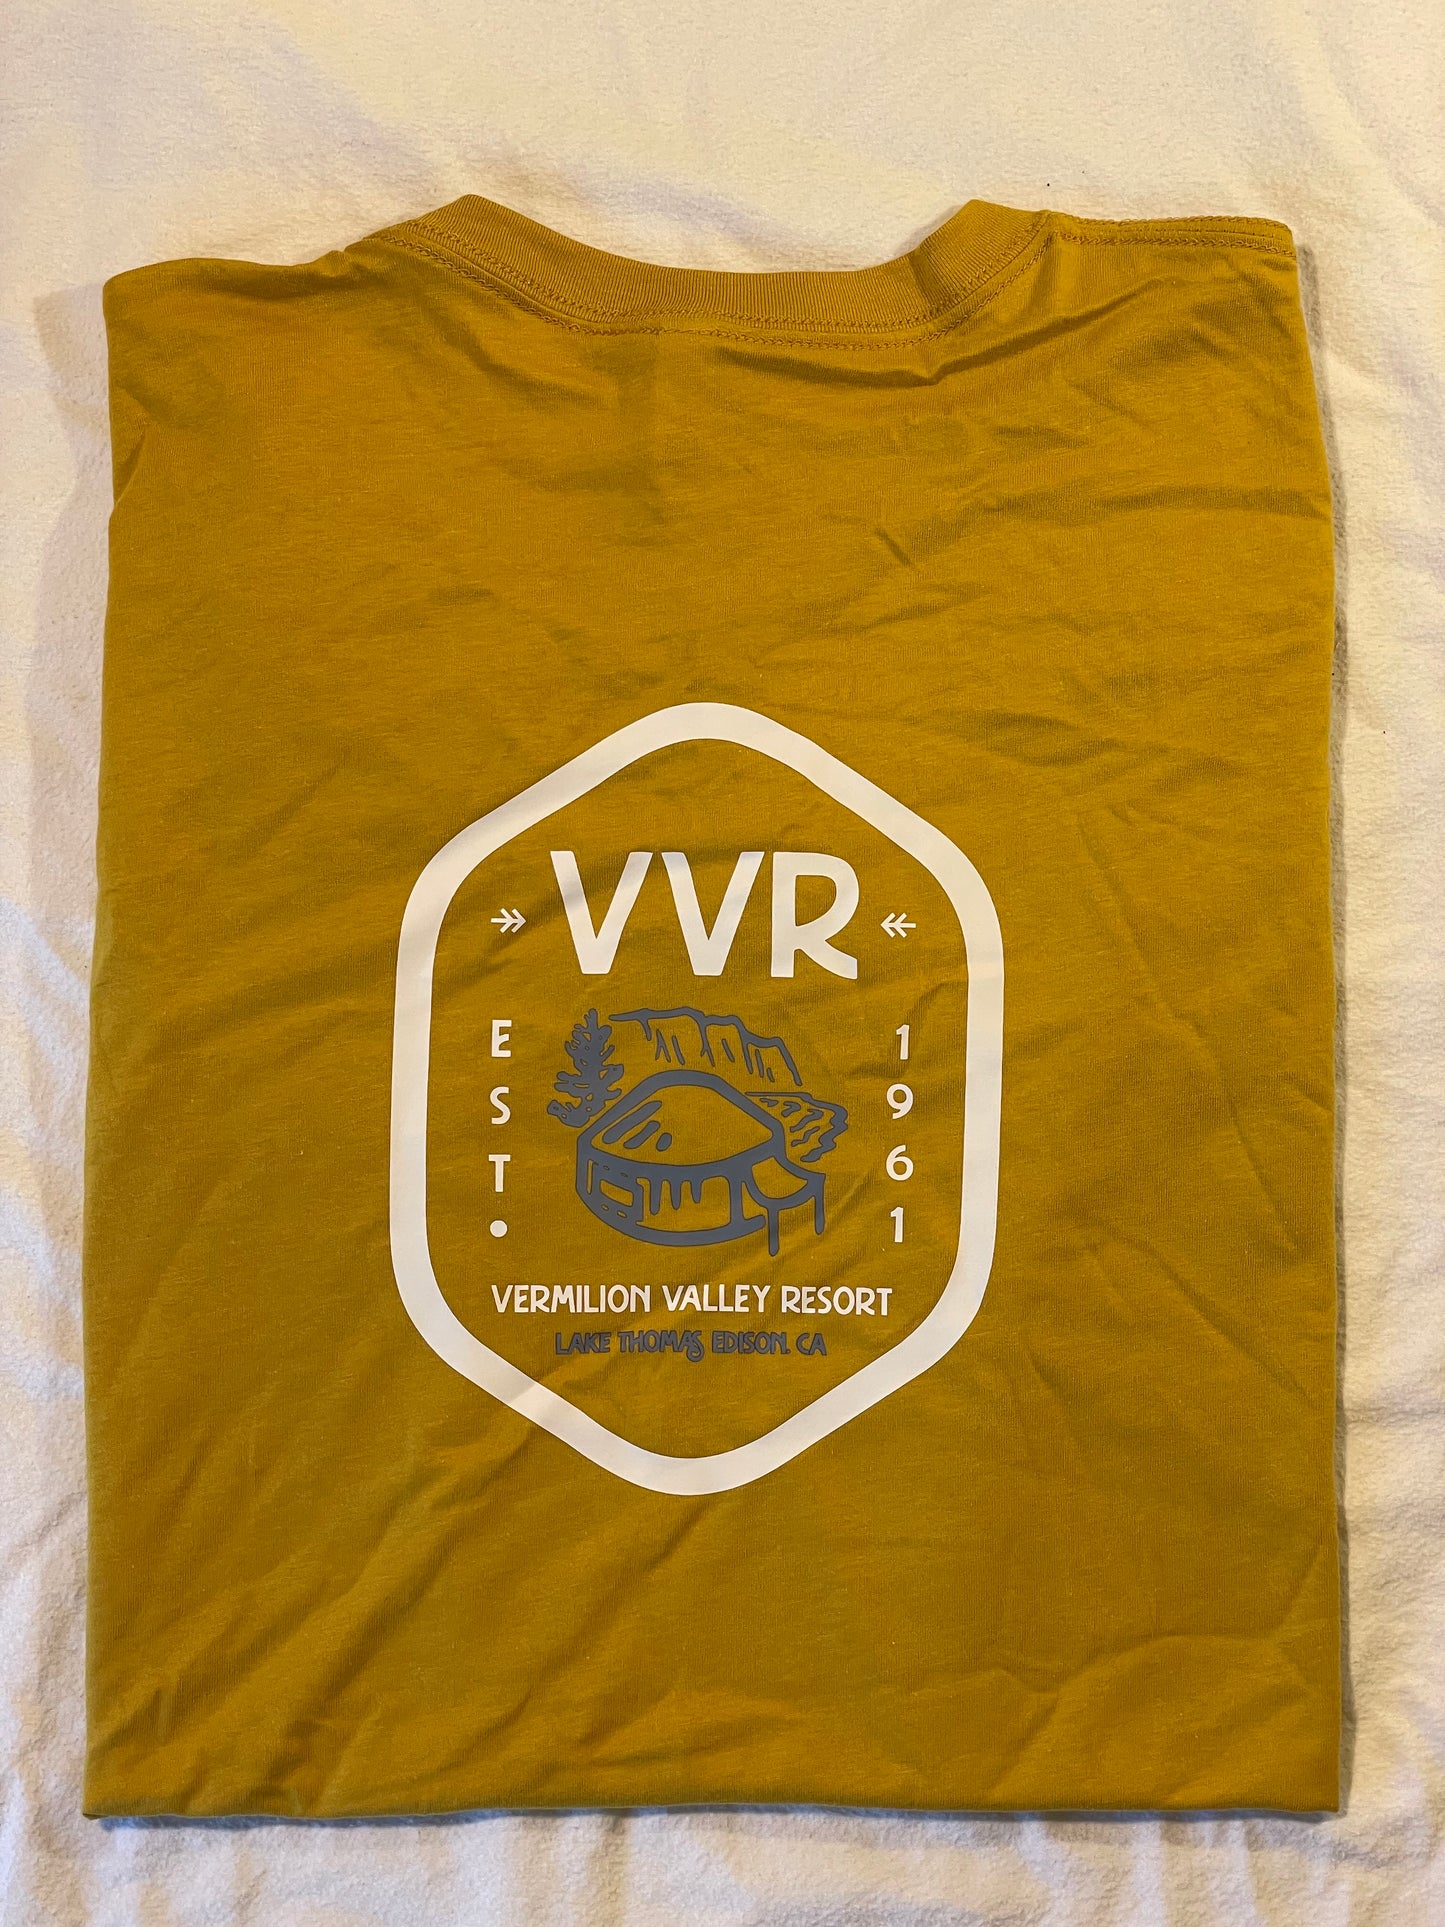 VVR Pocket Logo T-Shirt - Mustard